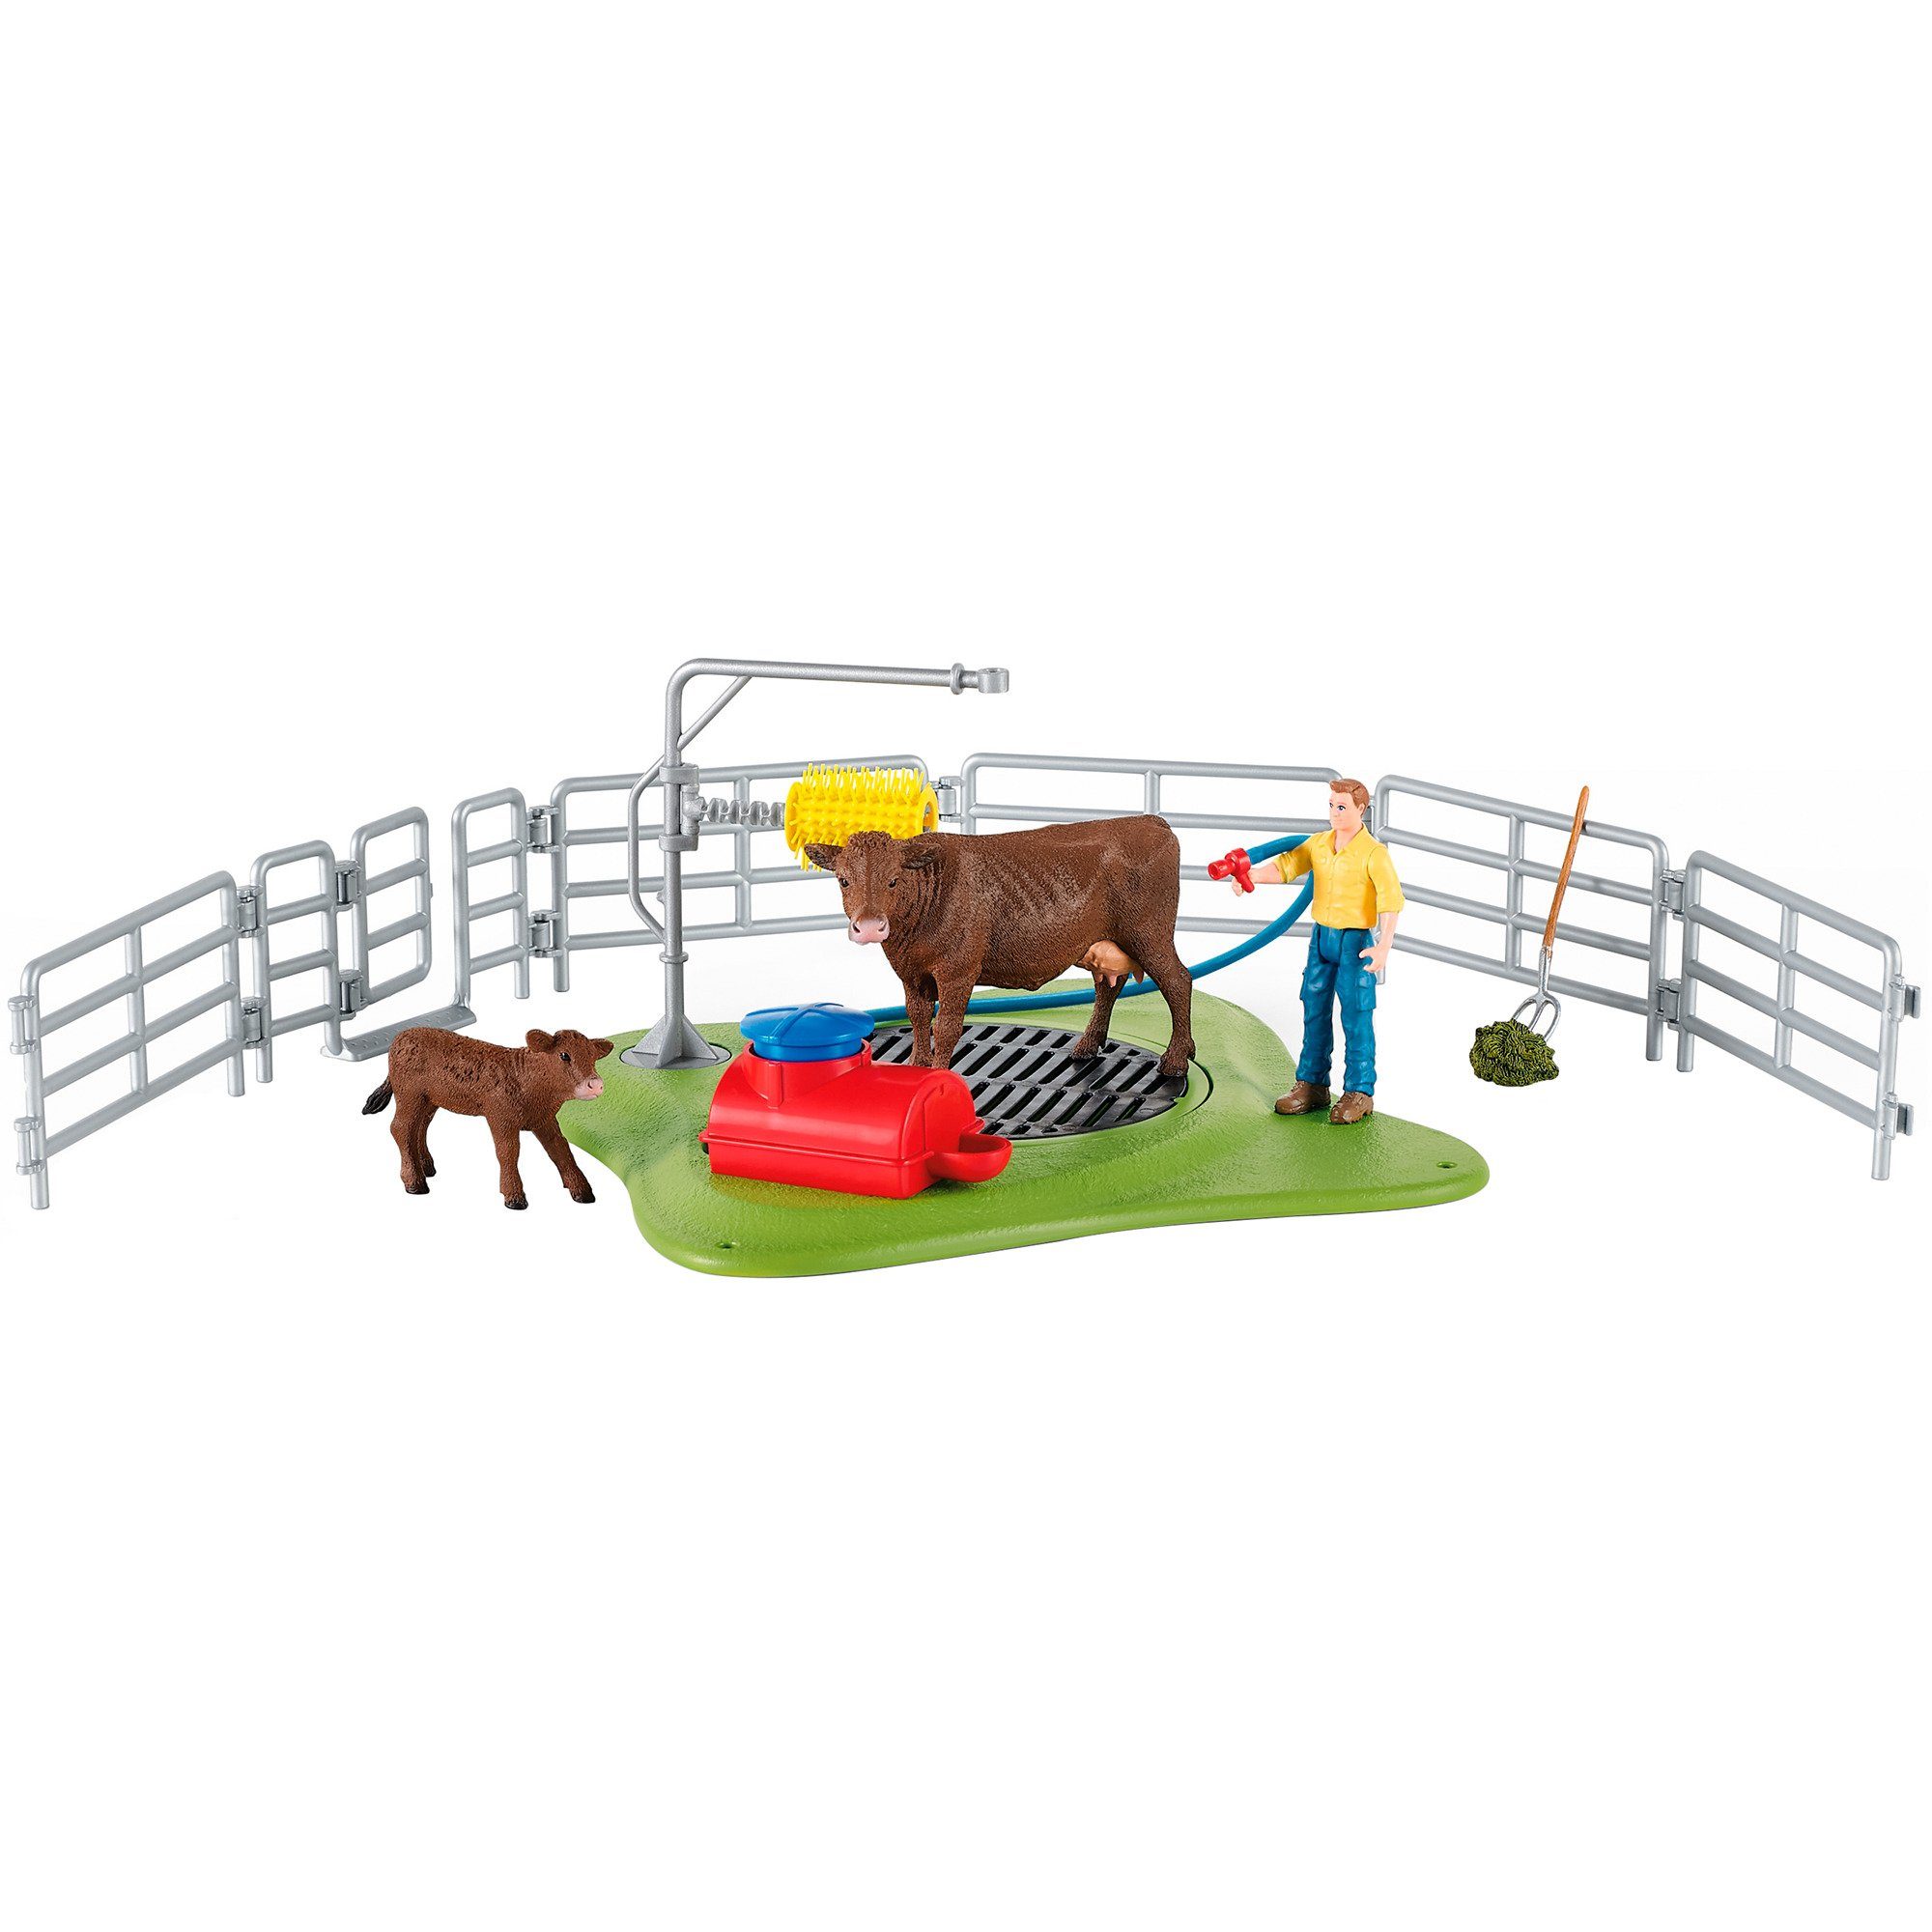 World Schleich Kuh Spielfigur Waschstation, Farm Schleich® Spielfigur